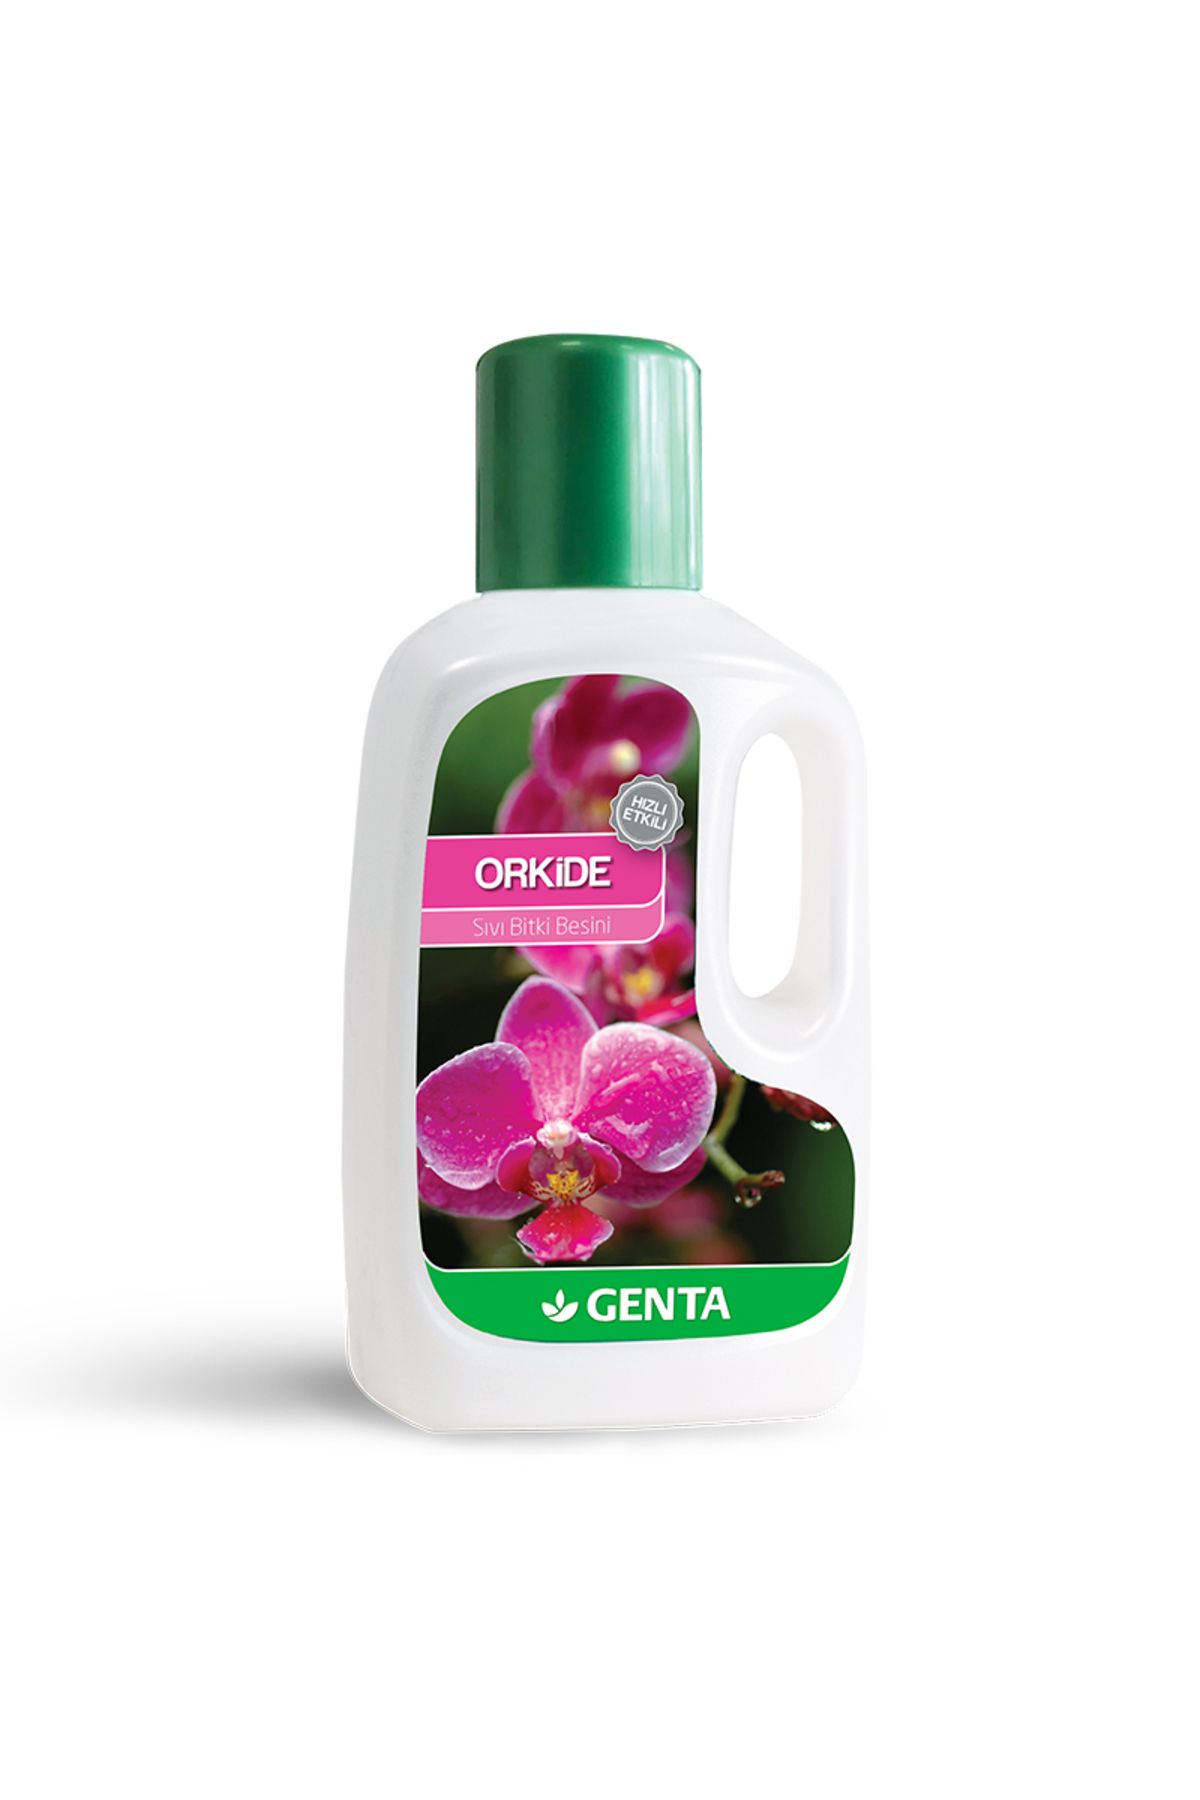 Genta Orkideler Için Sıvı Bitki Besini 500 ml